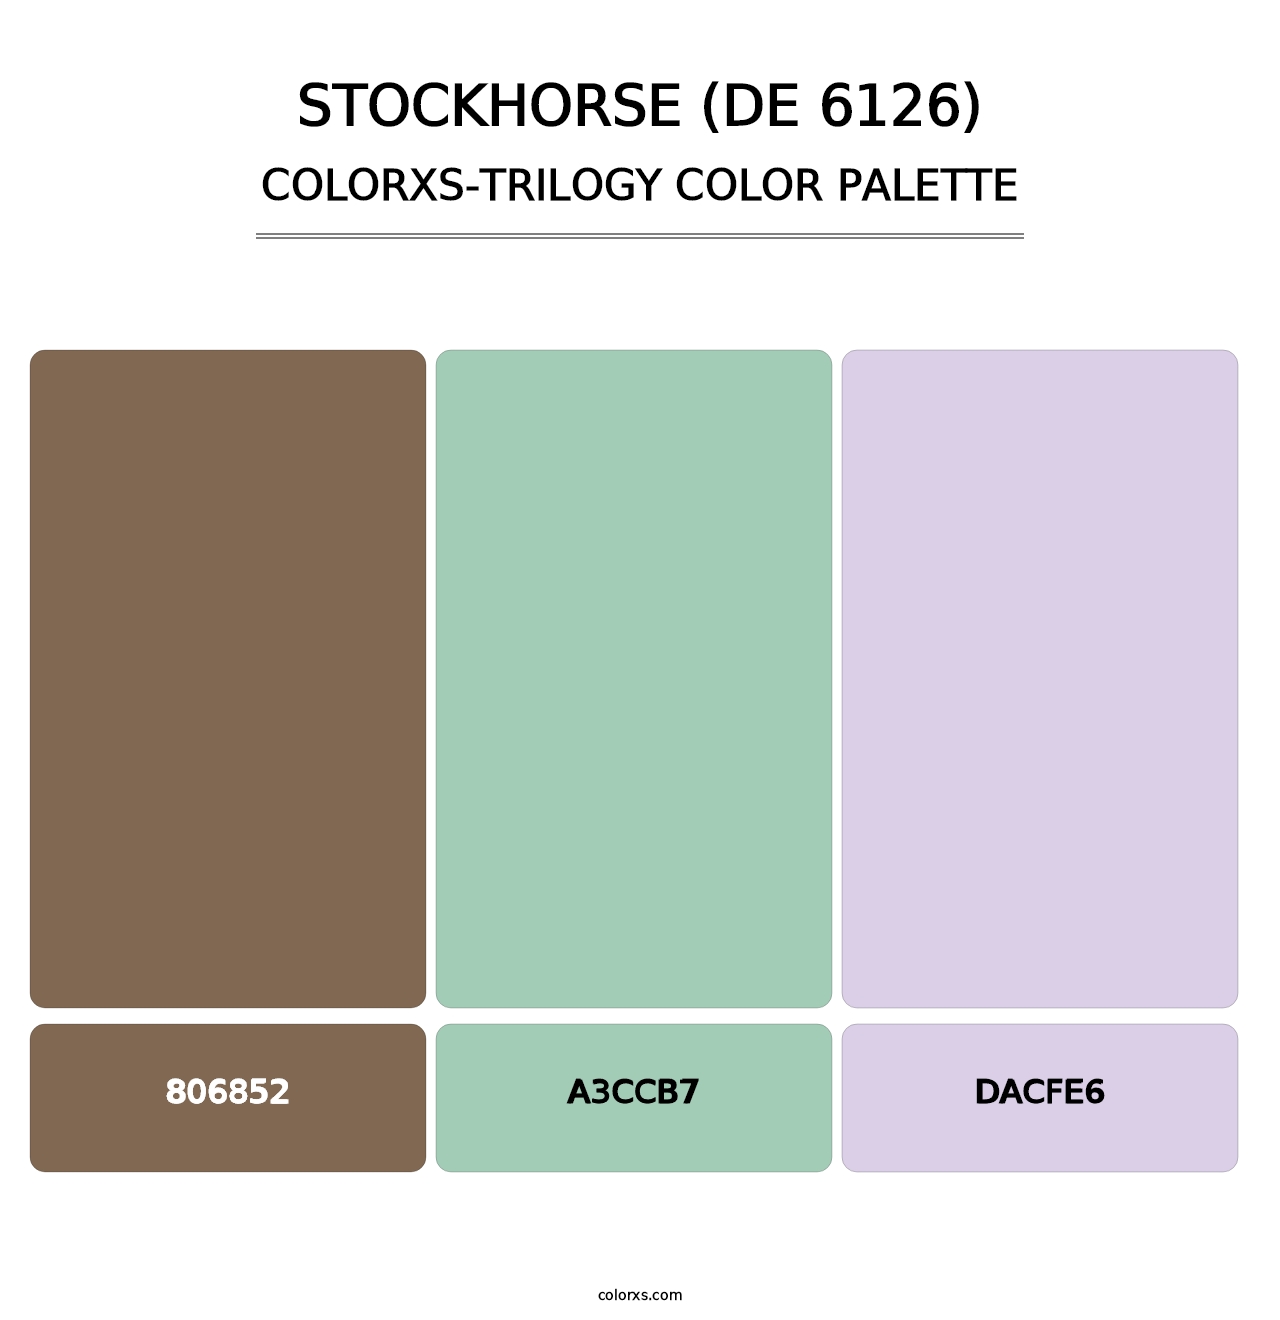 Stockhorse (DE 6126) - Colorxs Trilogy Palette